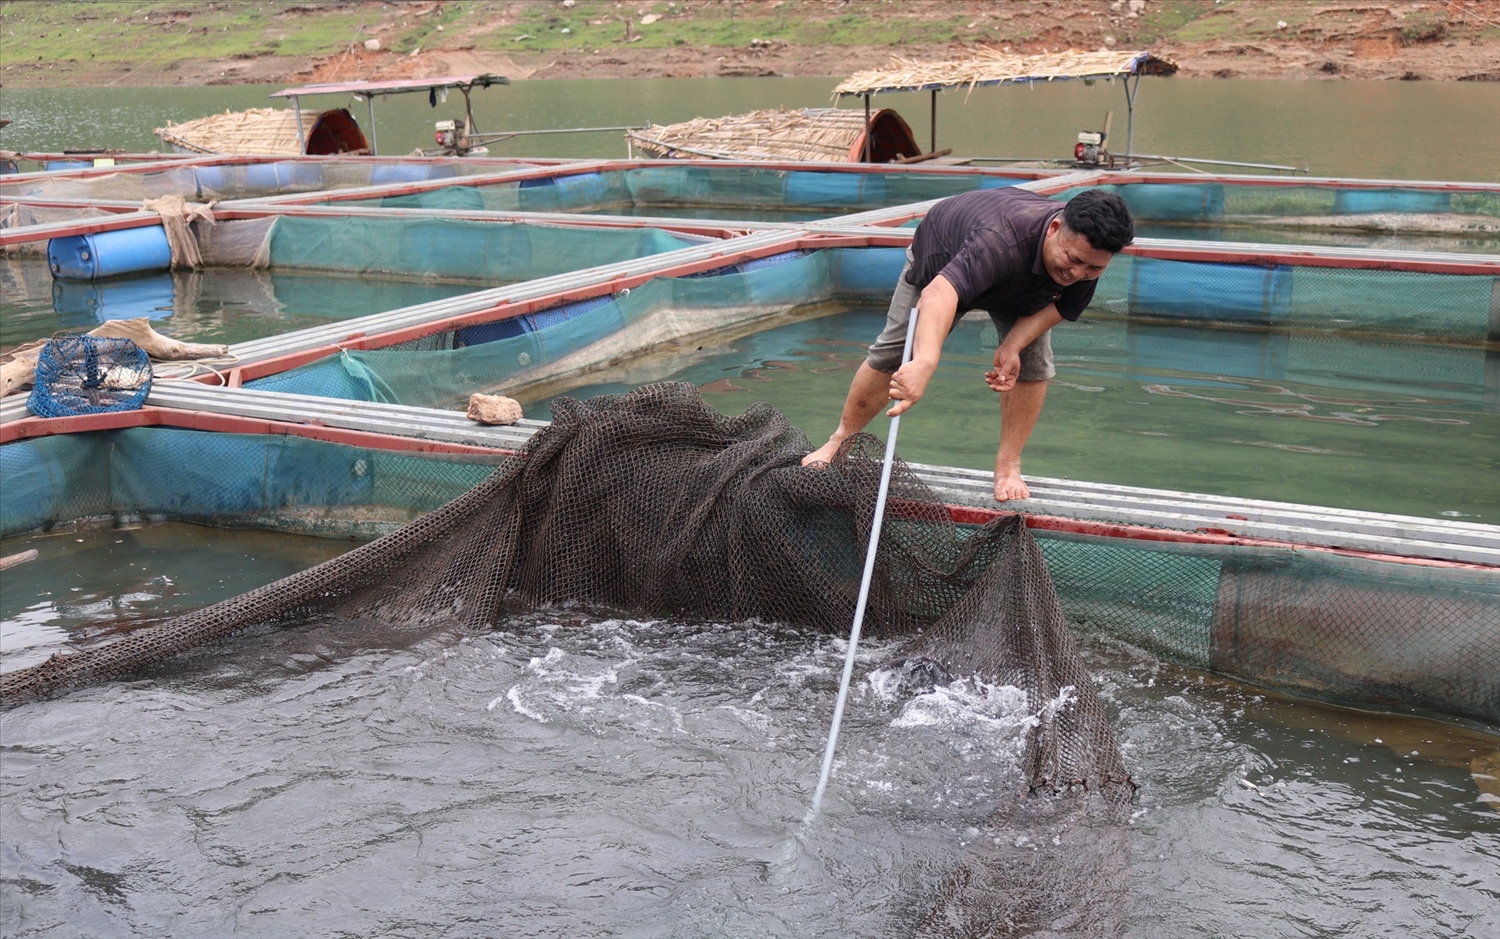 Ở Sơn La hiện đã có nhiều mô hình sản xuất nông nghiệp hàng hóa, mang lại giá trị kinh tế cao. (Trong ảnh: Mô hình nuôi cá lồng ở xã Chiềng Ơn, huyện Quỳnh Nhai)